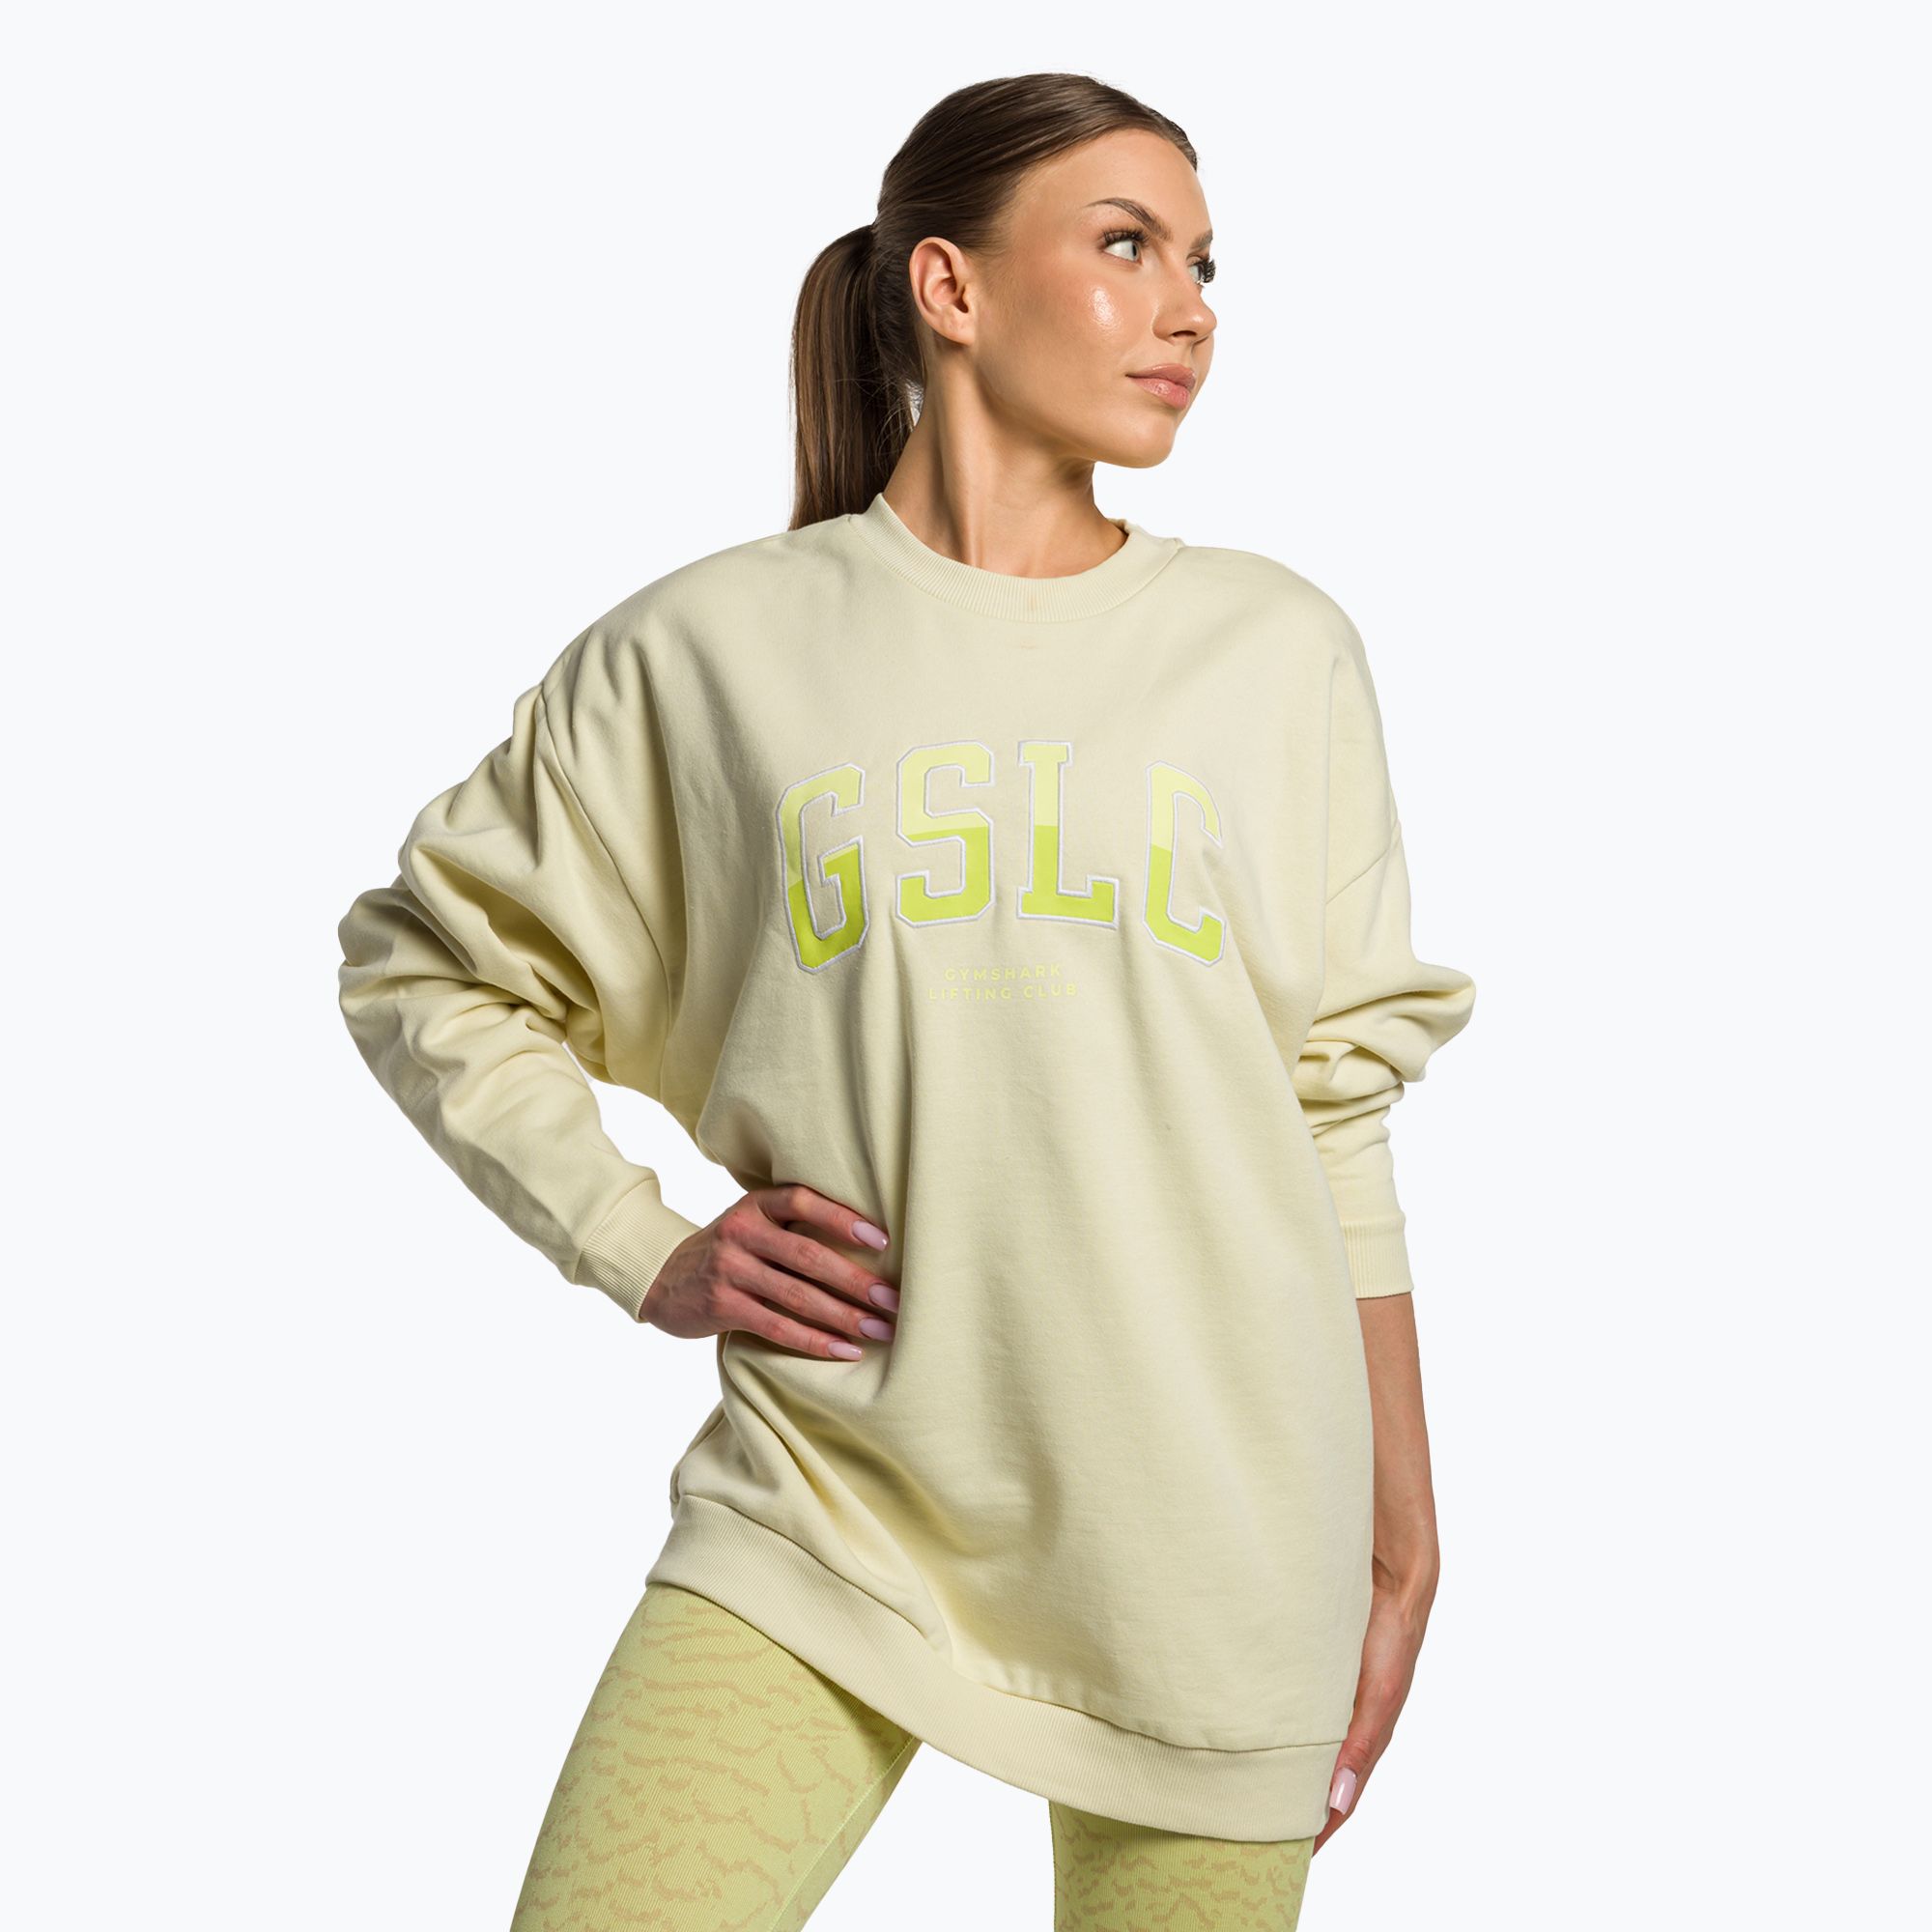 Women's Sweatshirts & Gym Sweatshirts - Gymshark